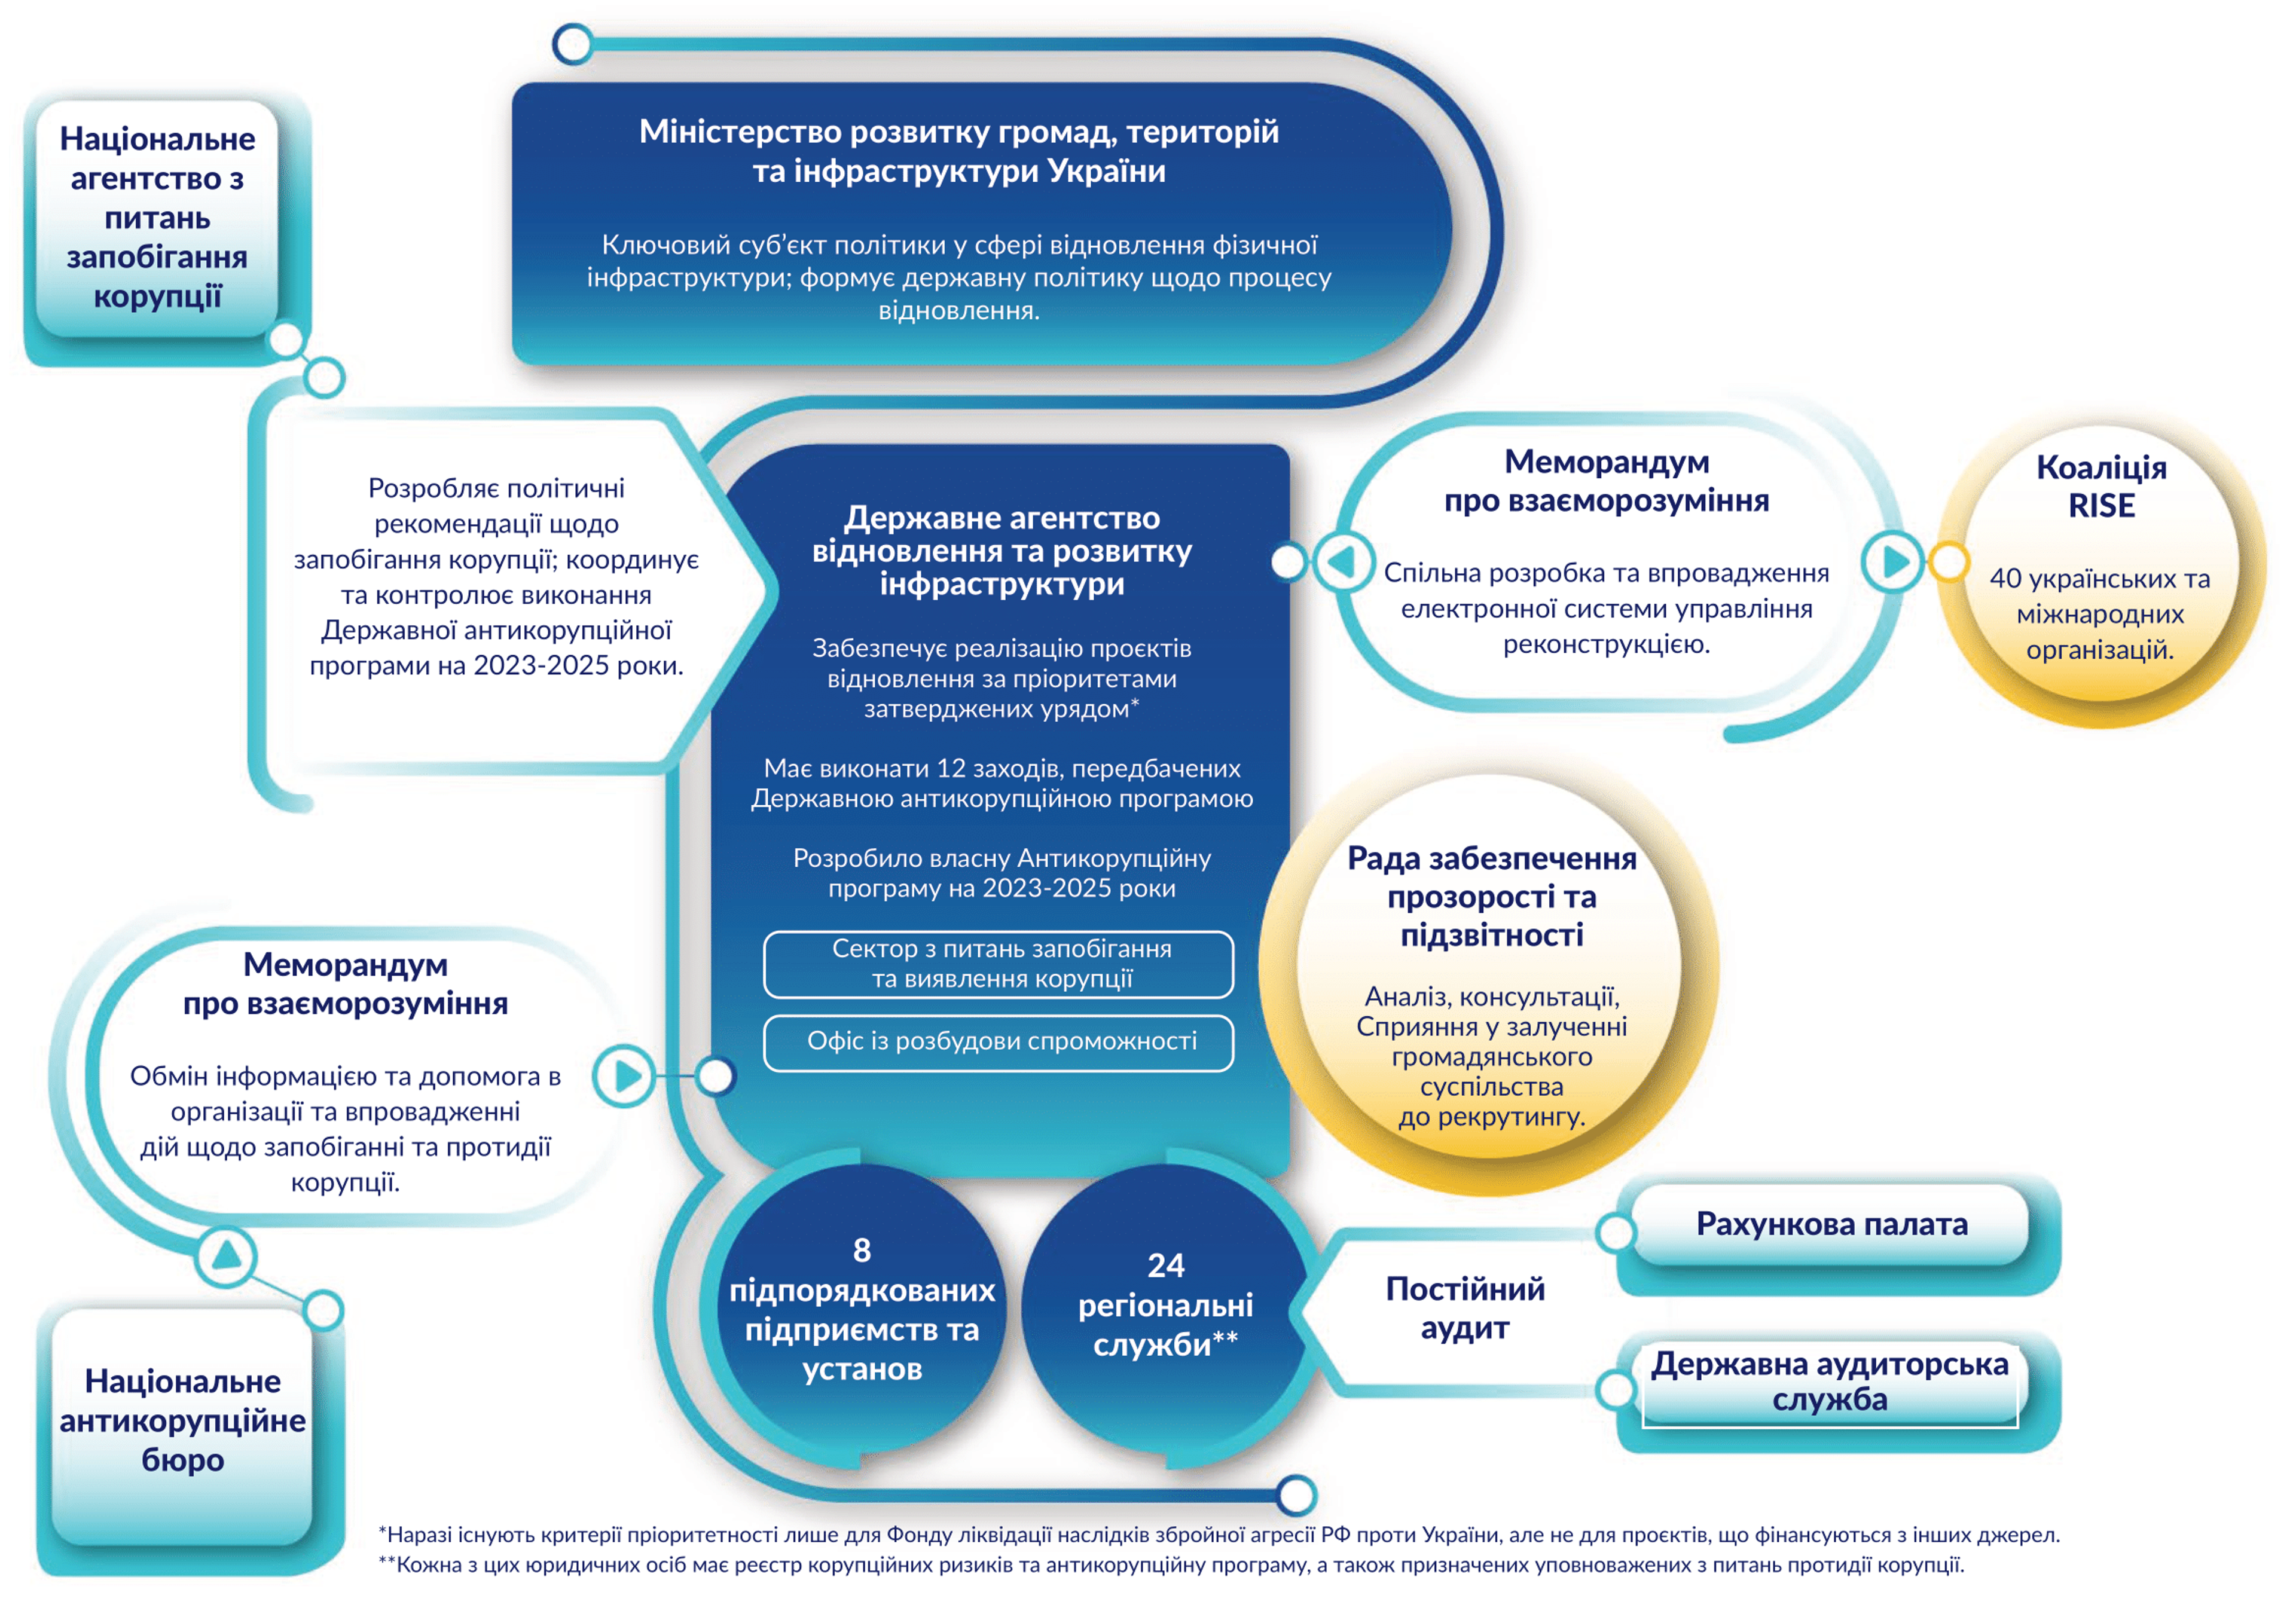 Загальна схема, що показує Державне агентство з відновлення та розвитку інфраструктури та його зв'язки з ключовими акторами антикорупційної сфери в Україні